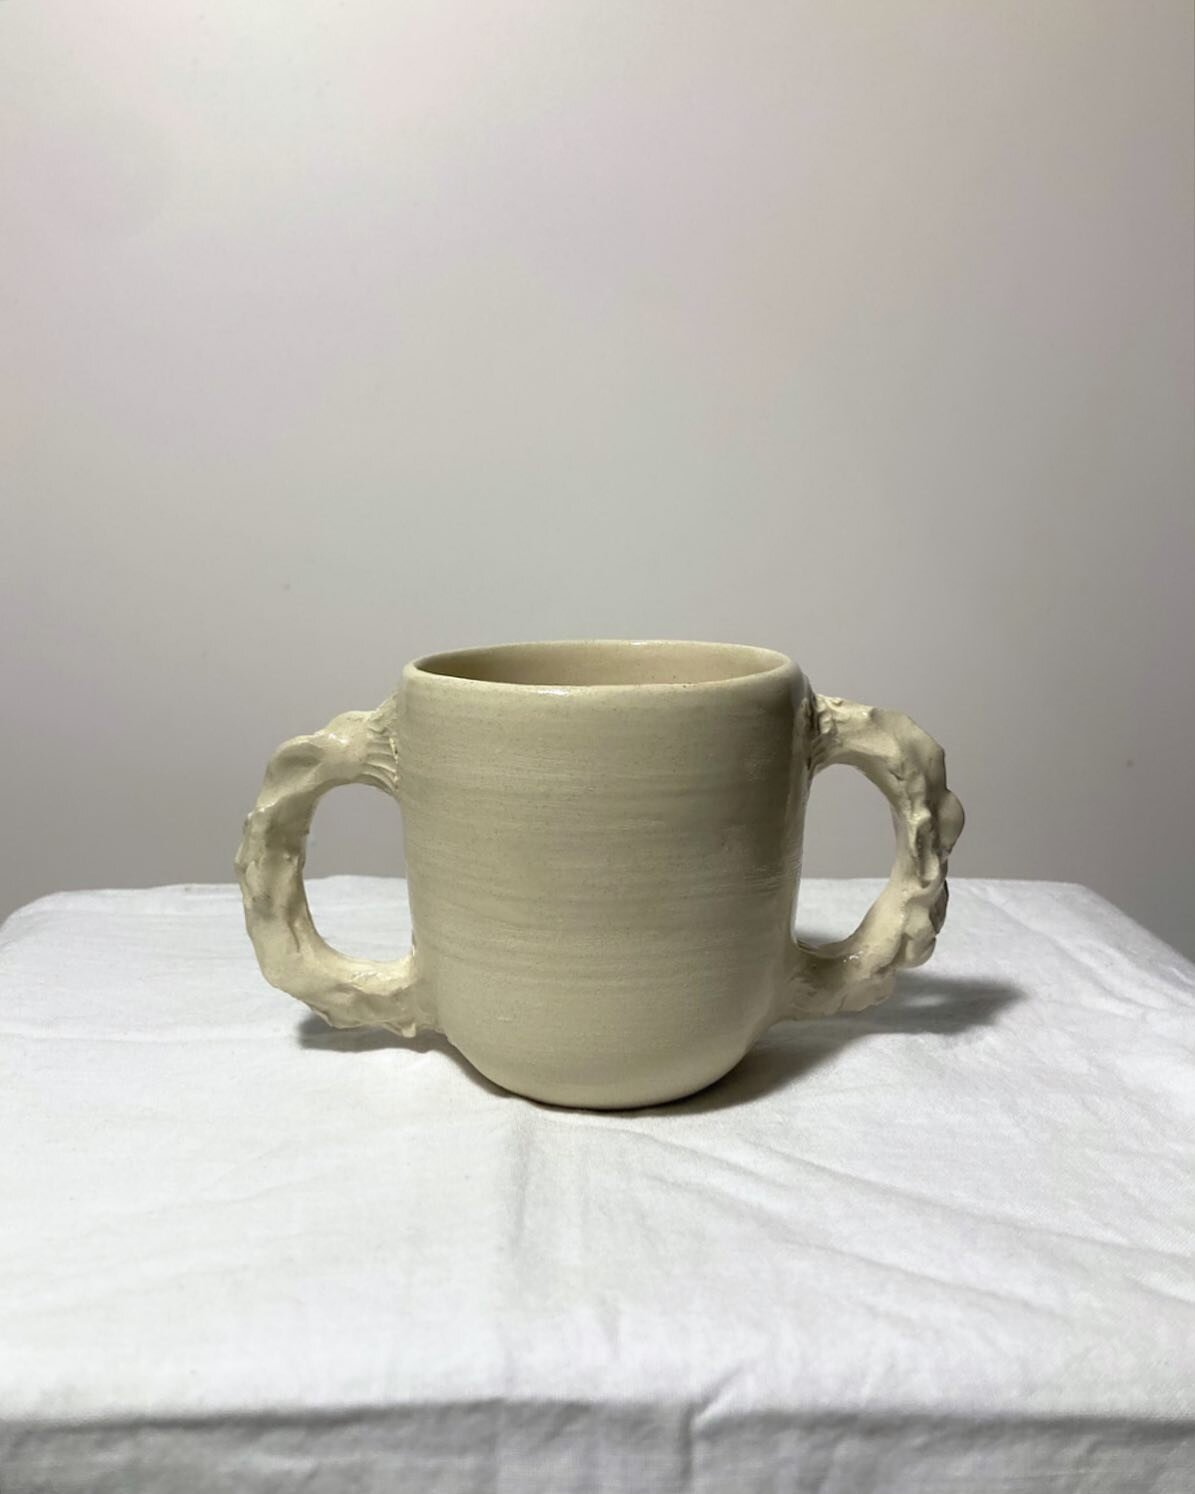 Double anse moche pour bien s&rsquo;accrocher 
Gr&egrave;s 
Teacup

.
.
.
#ceramics #ceramique #moderceramics #handmade #handmadeceramics #potterystudio #tableware